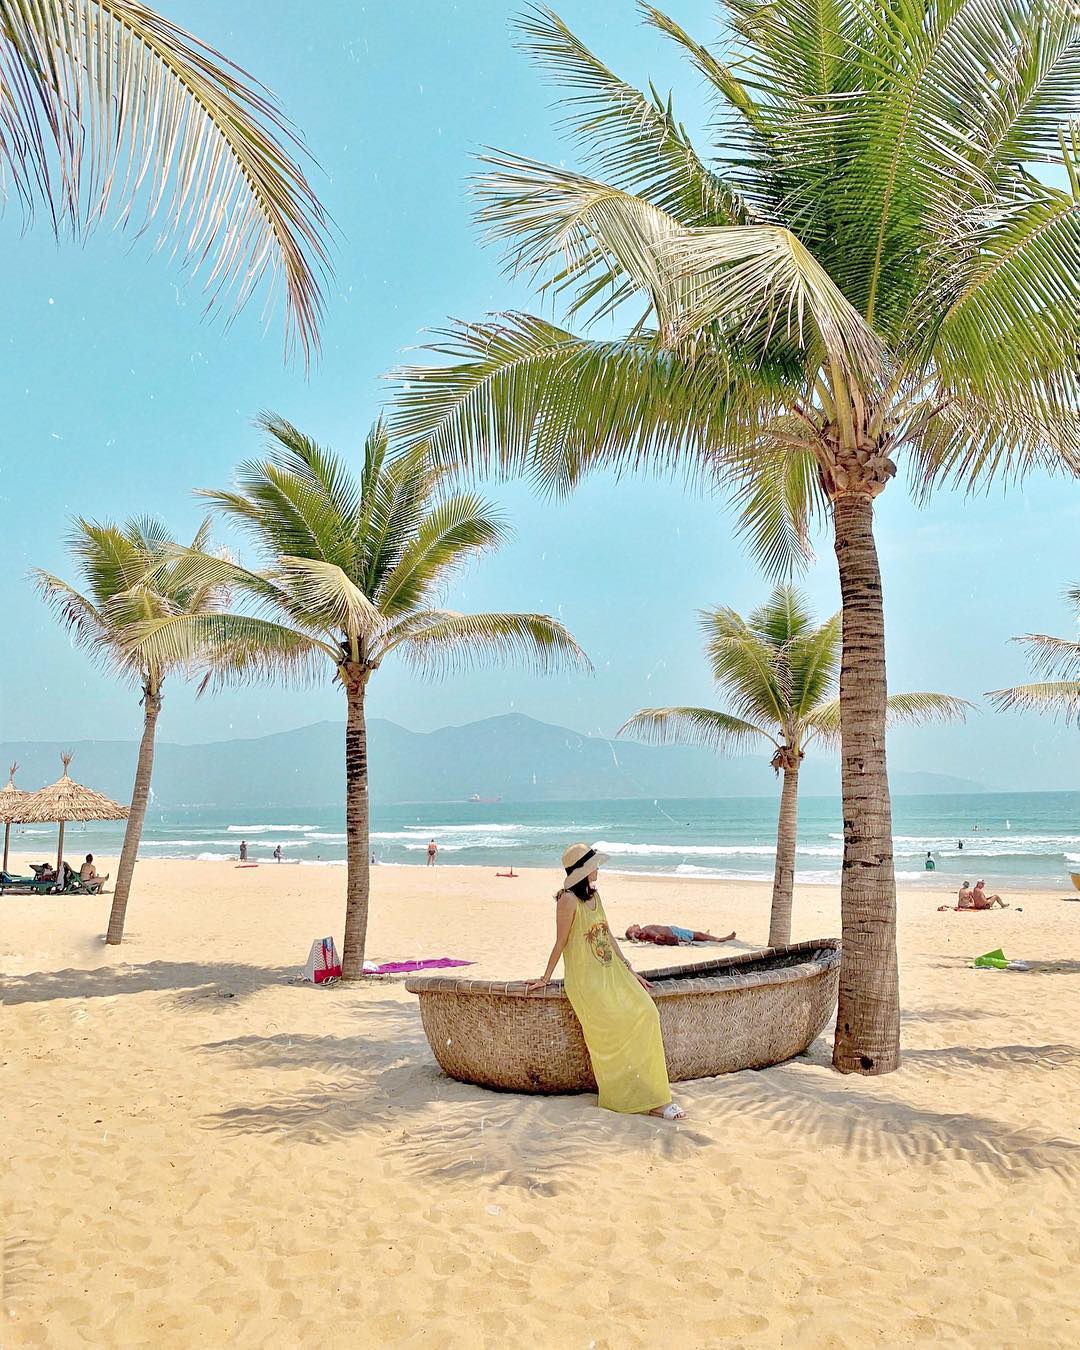 An Bàng, Mỹ Khê vào top 25 bãi biển đẹp nhất châu Á - 6